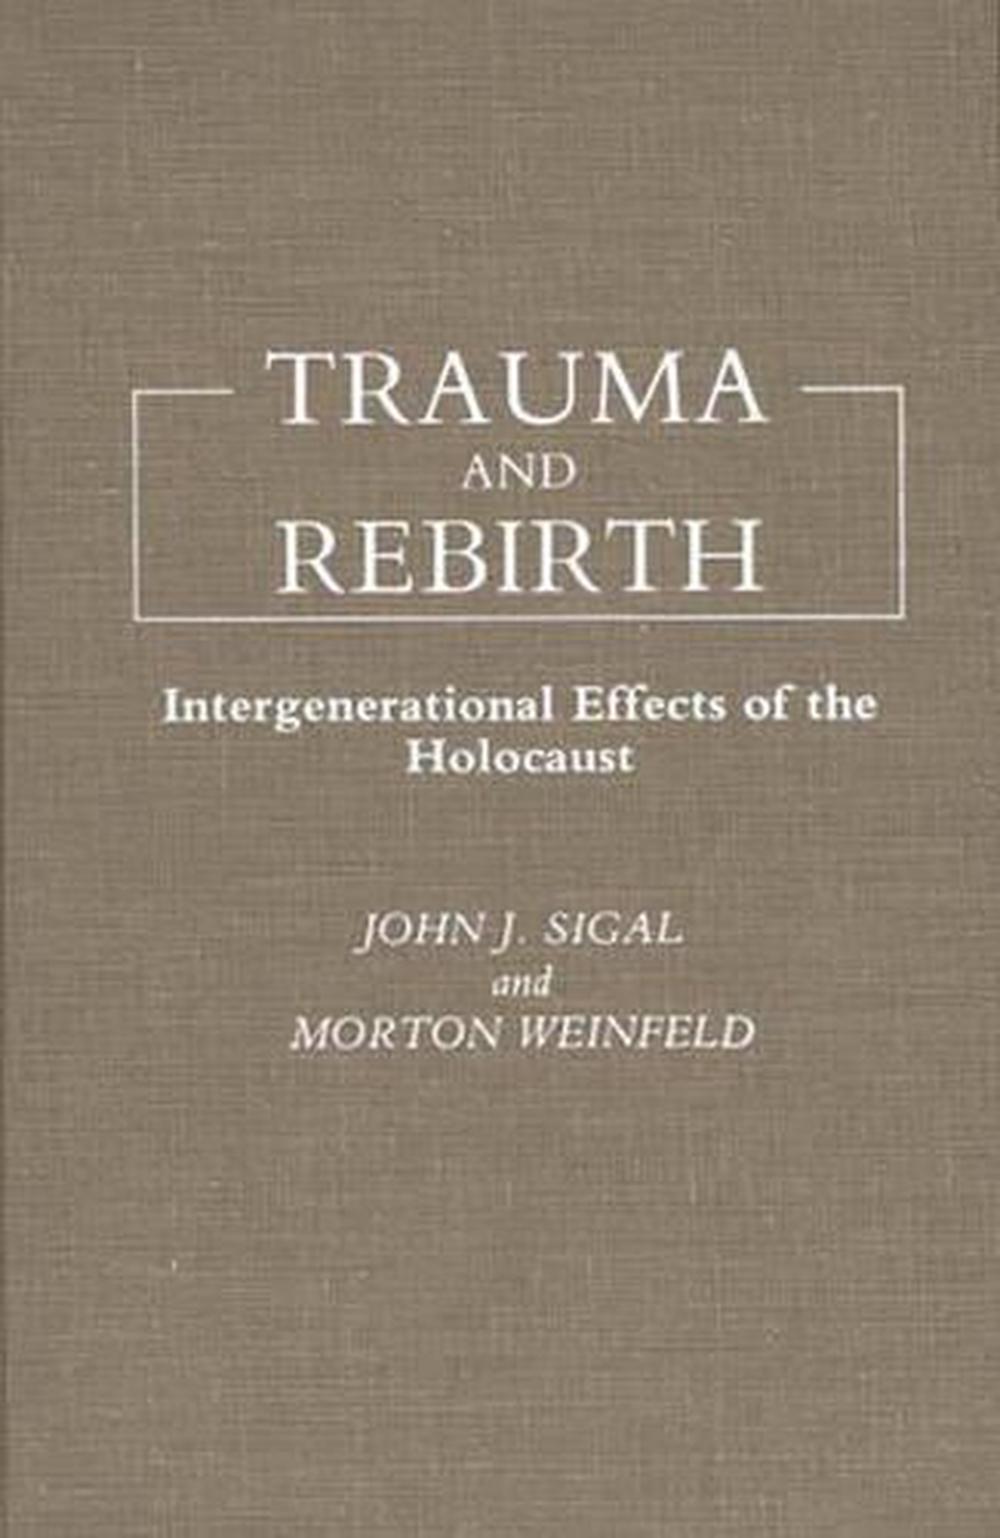 holocaust intergenerational trauma